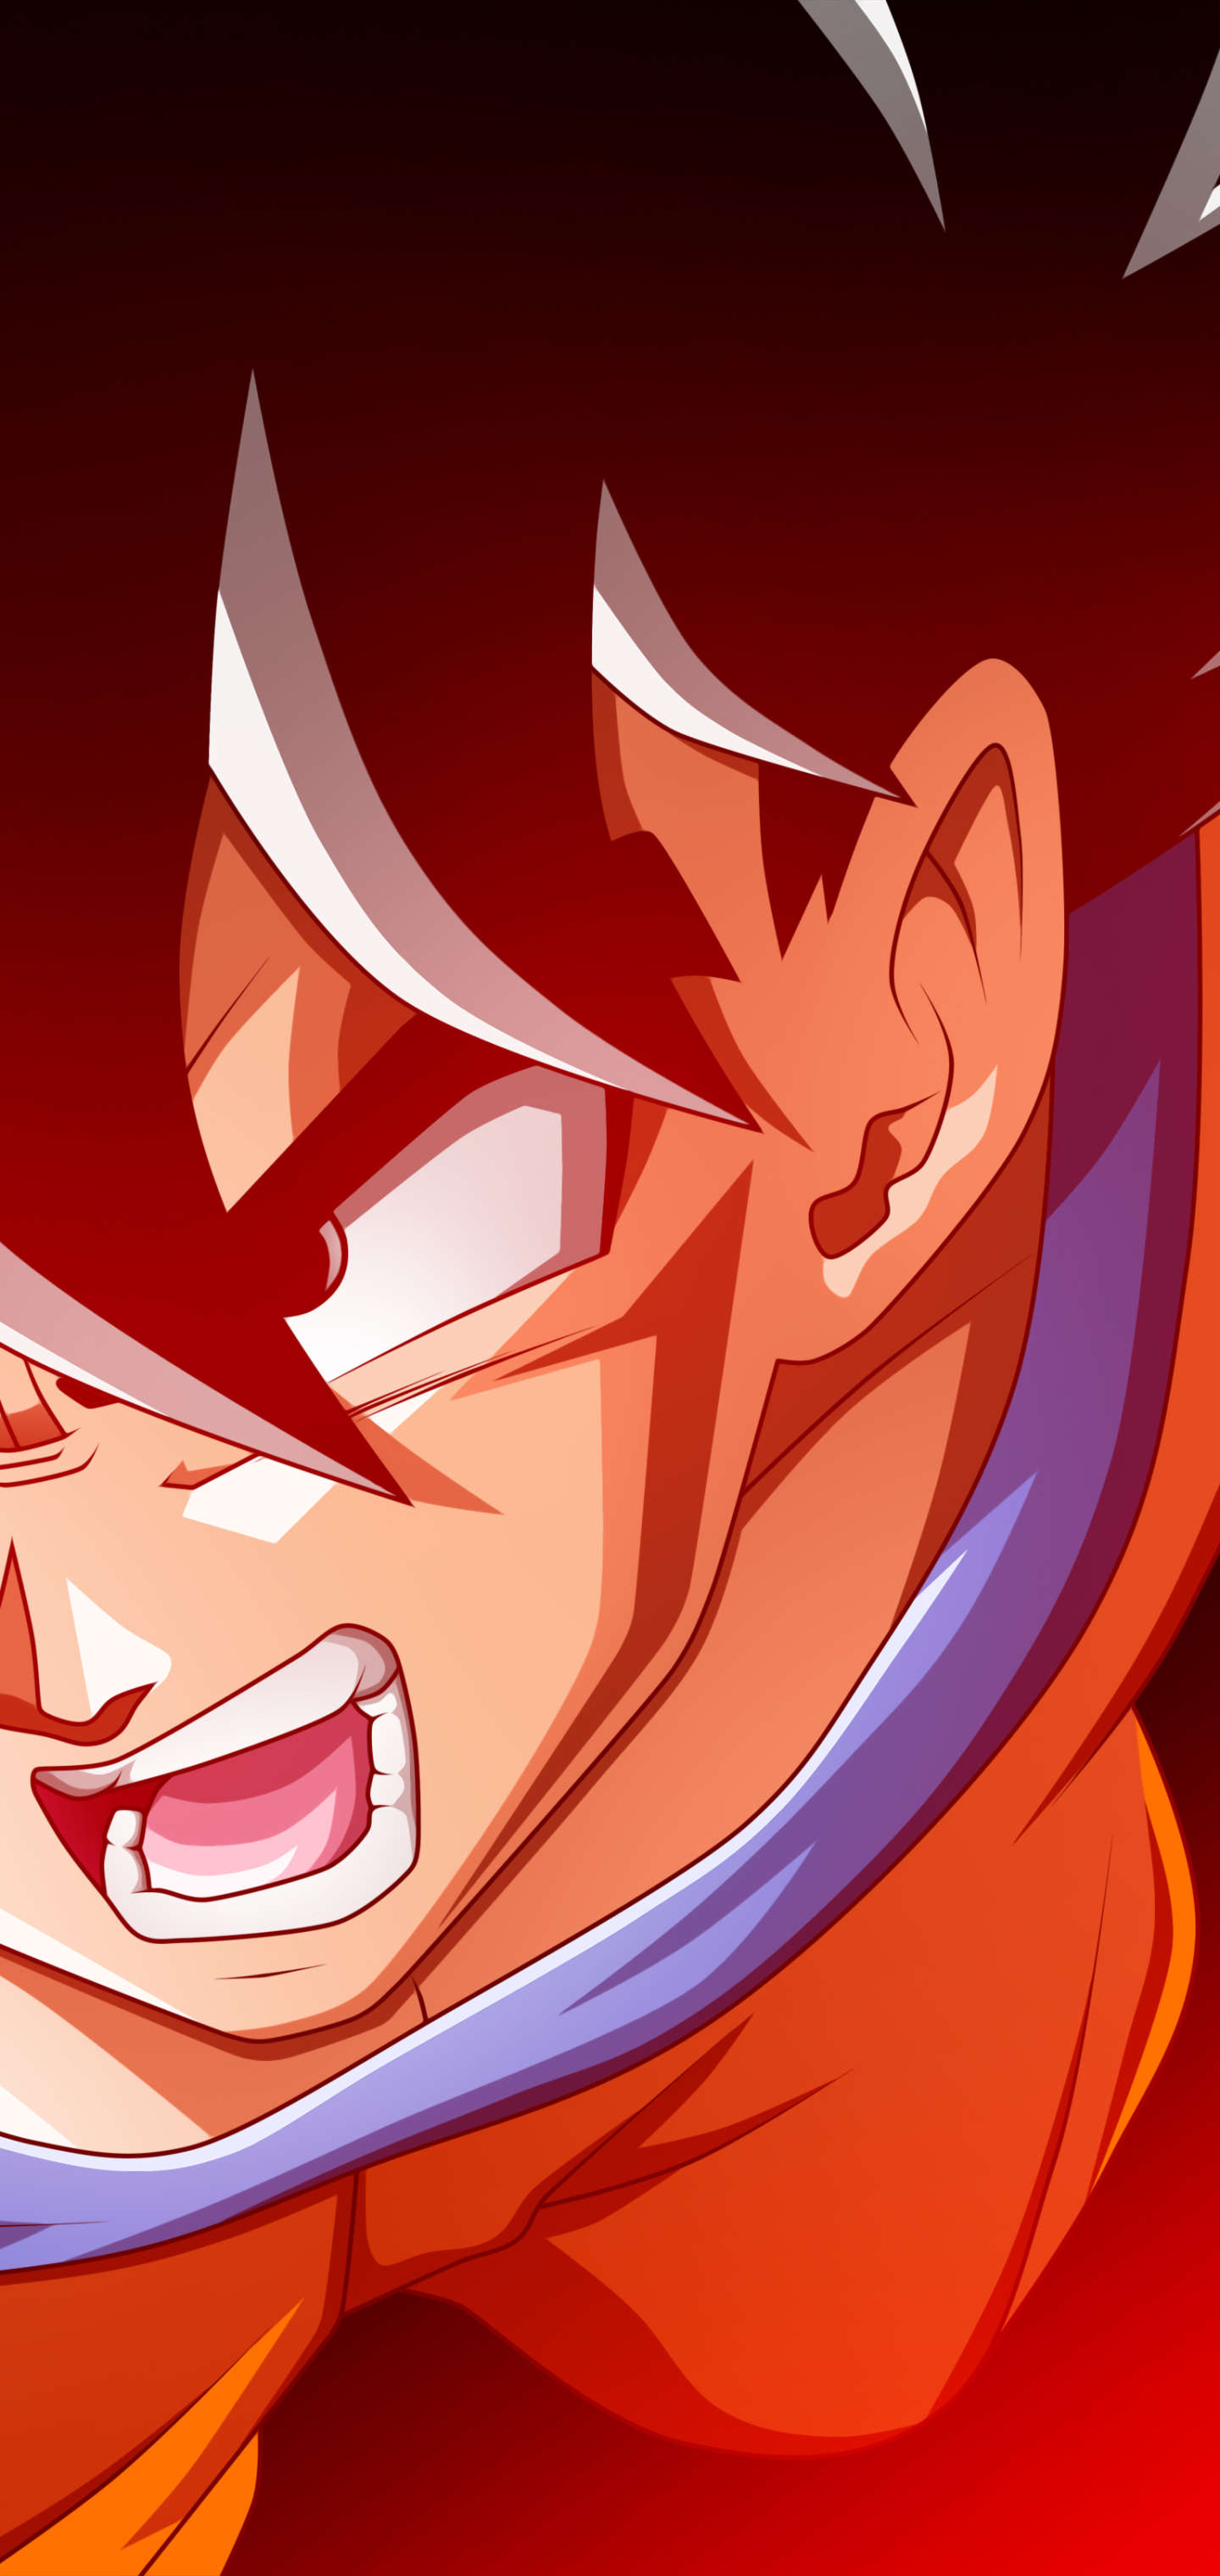 Anime Dragon Ball Z Phone Wallpaper by Fabian Sandi - Mobile Abyss